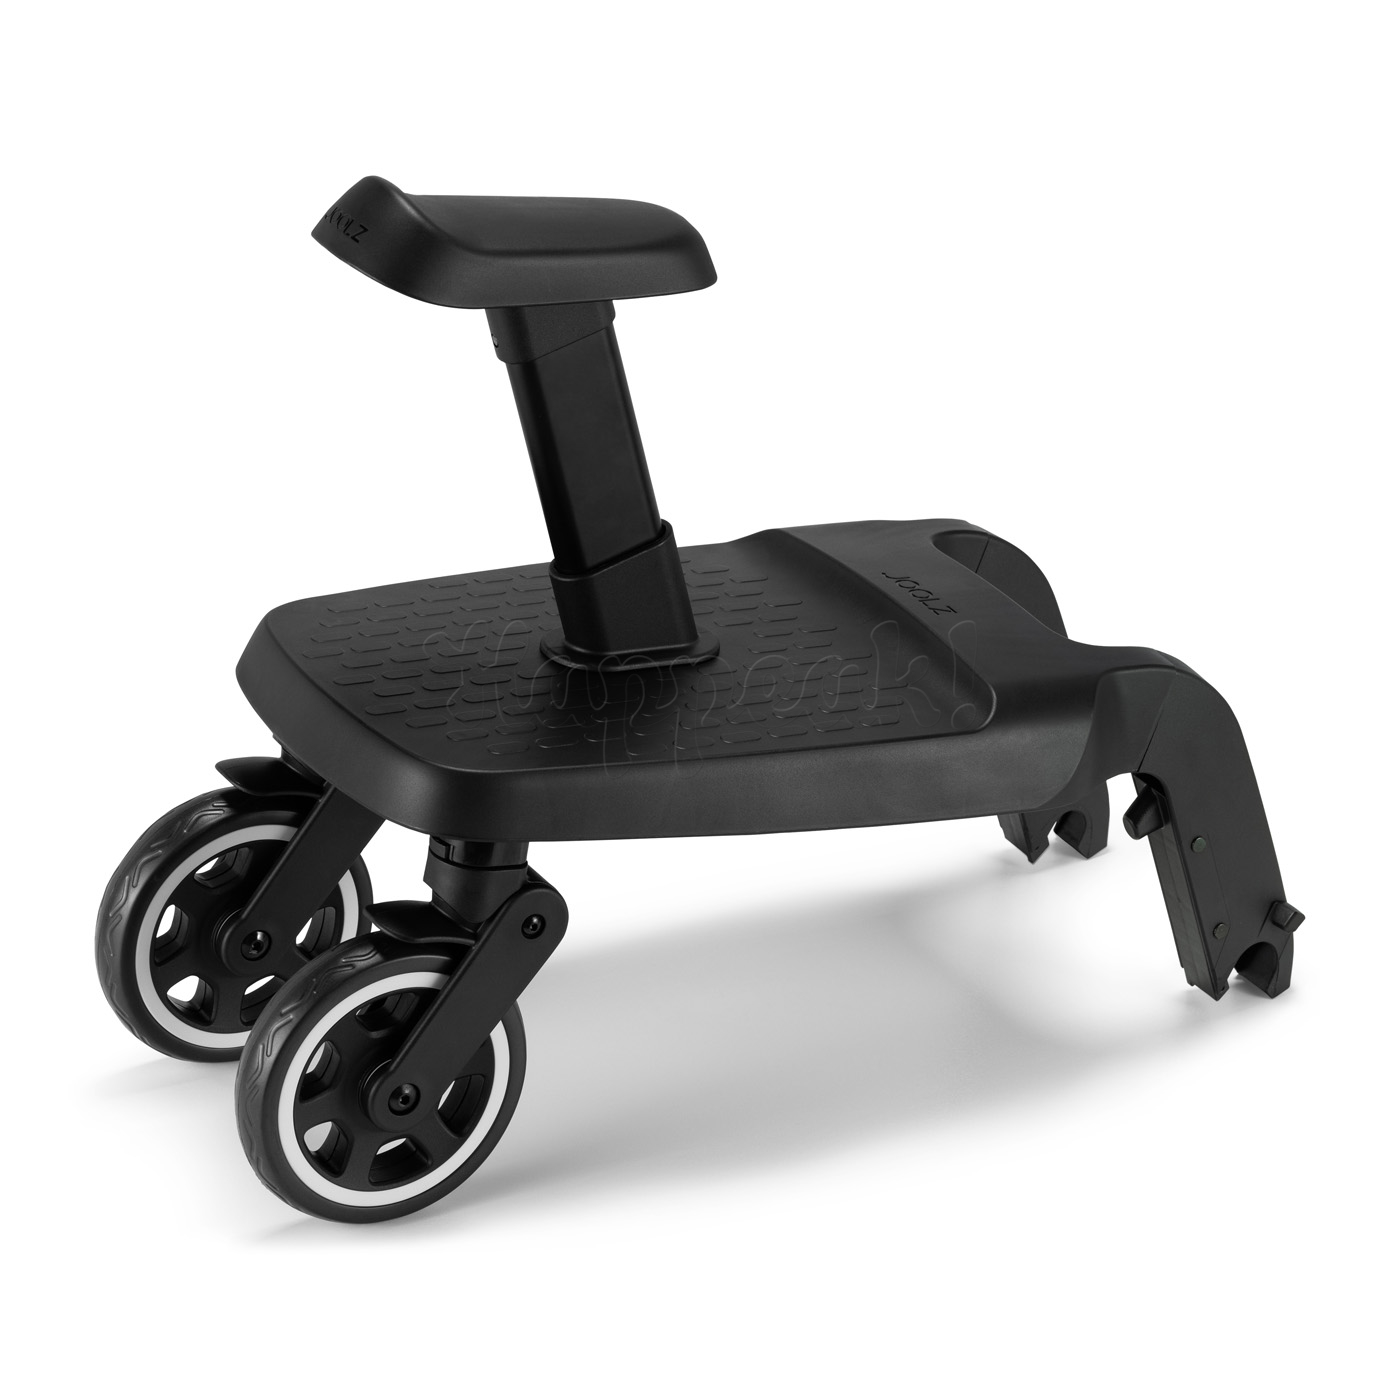 Подножка для коляски JOOLZ AER/AER+ BLACK